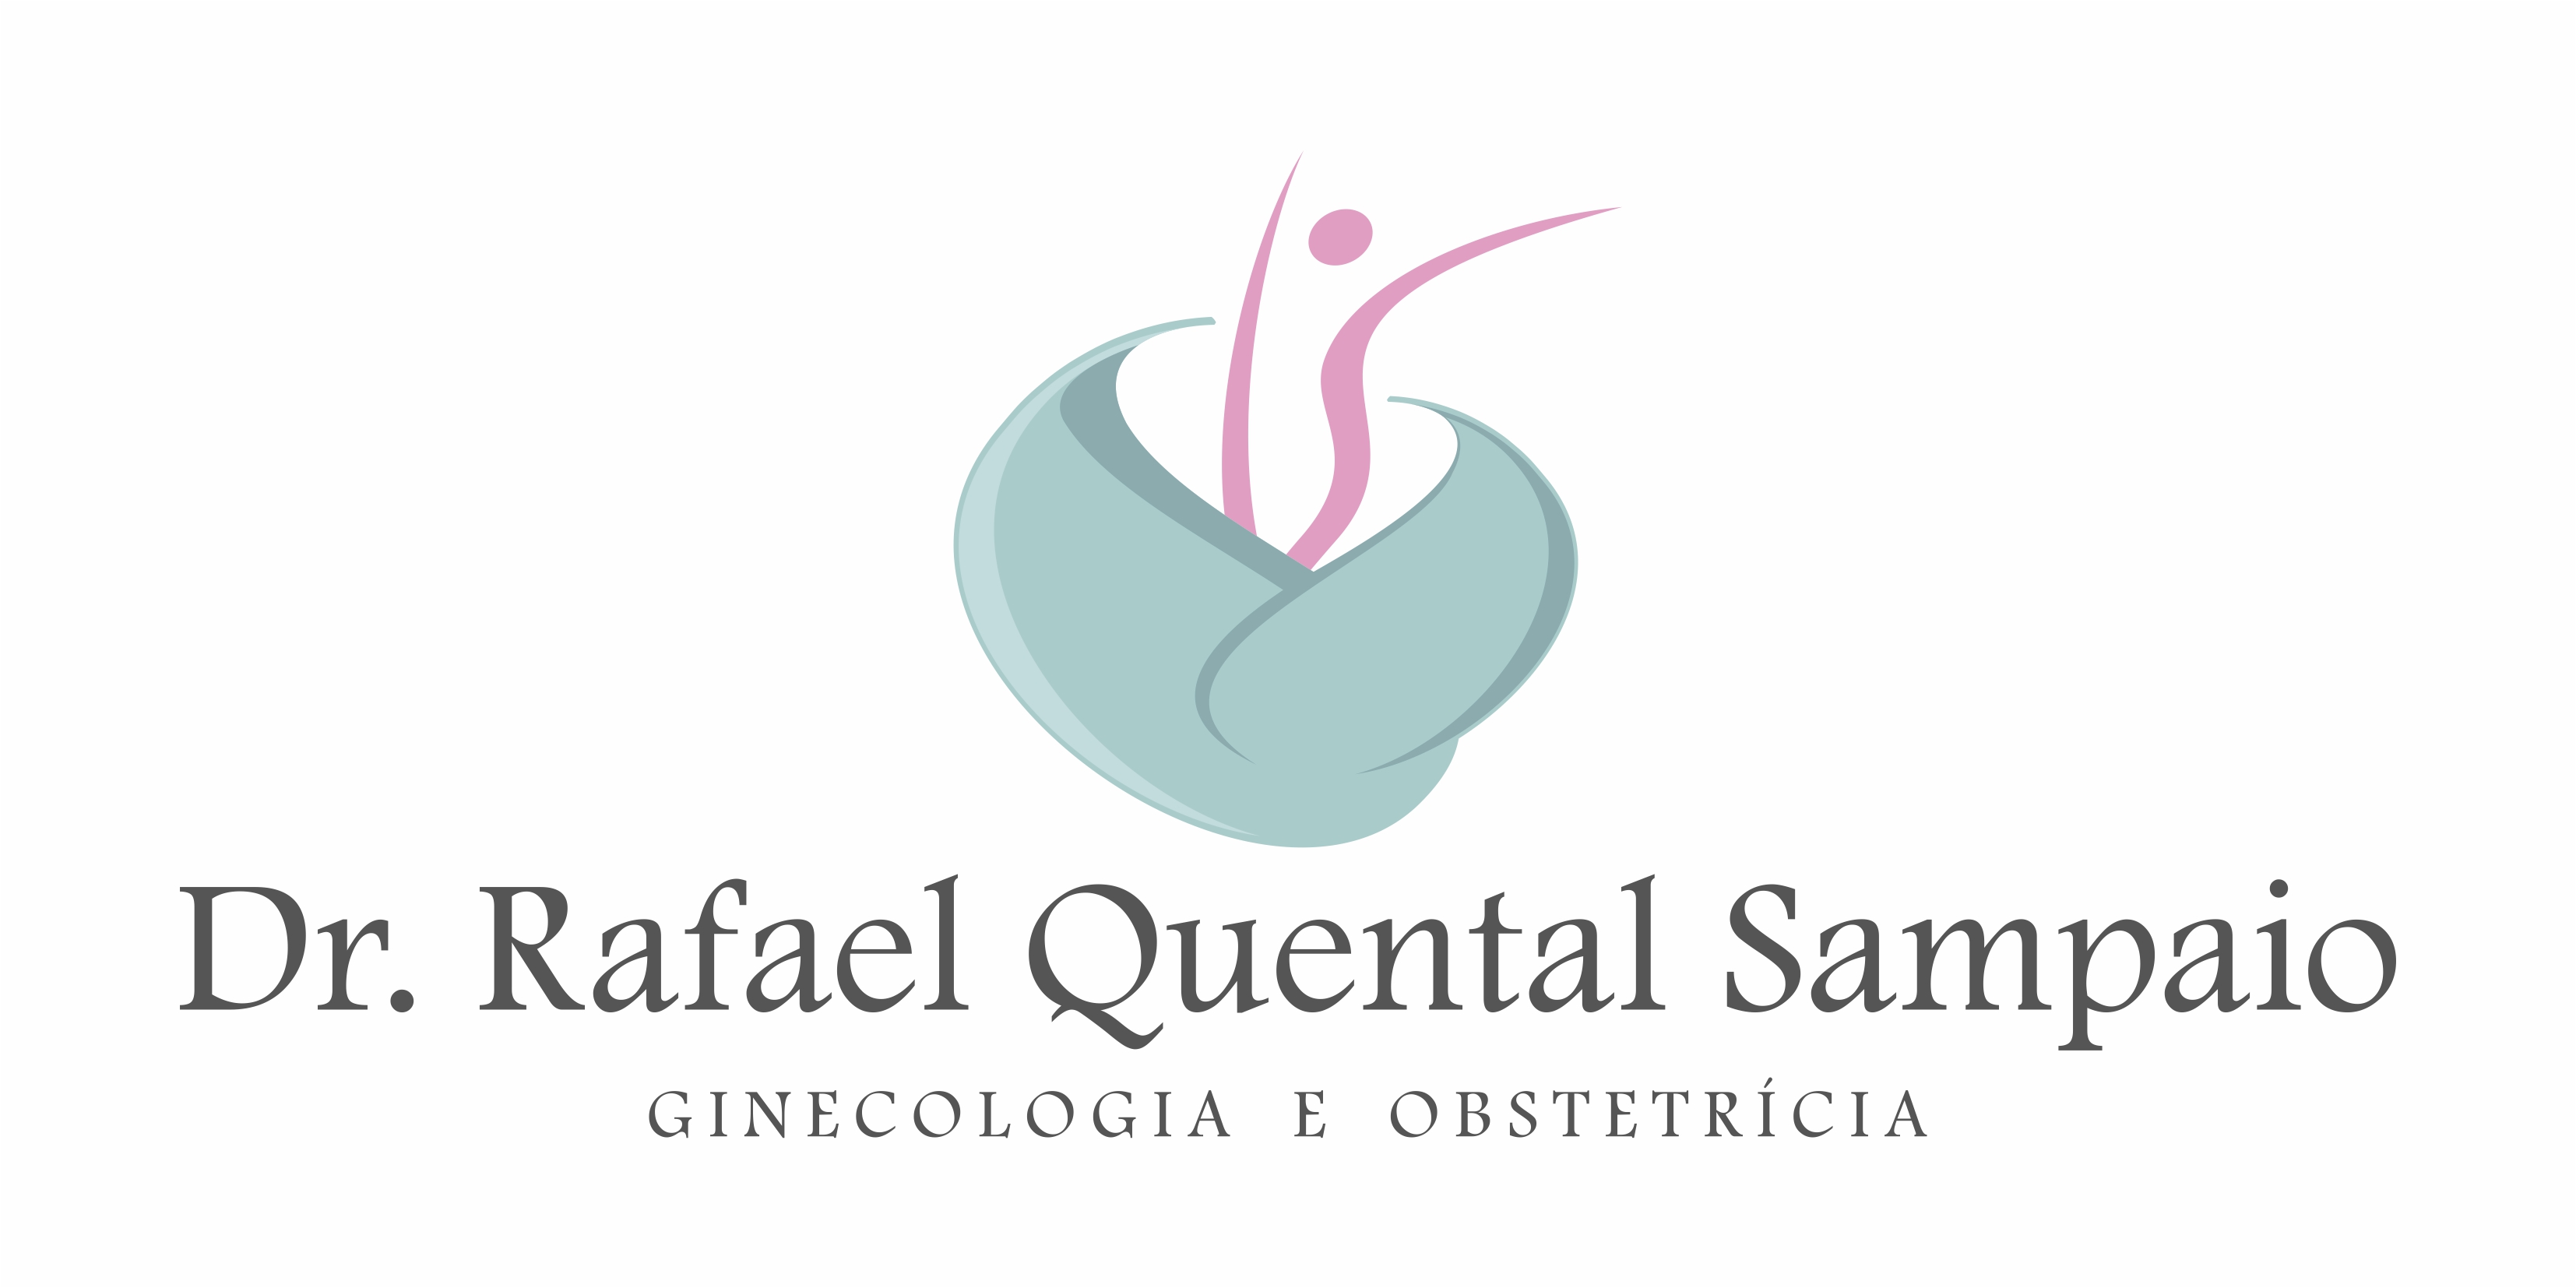 Dr. Rafael Quental Sampaio